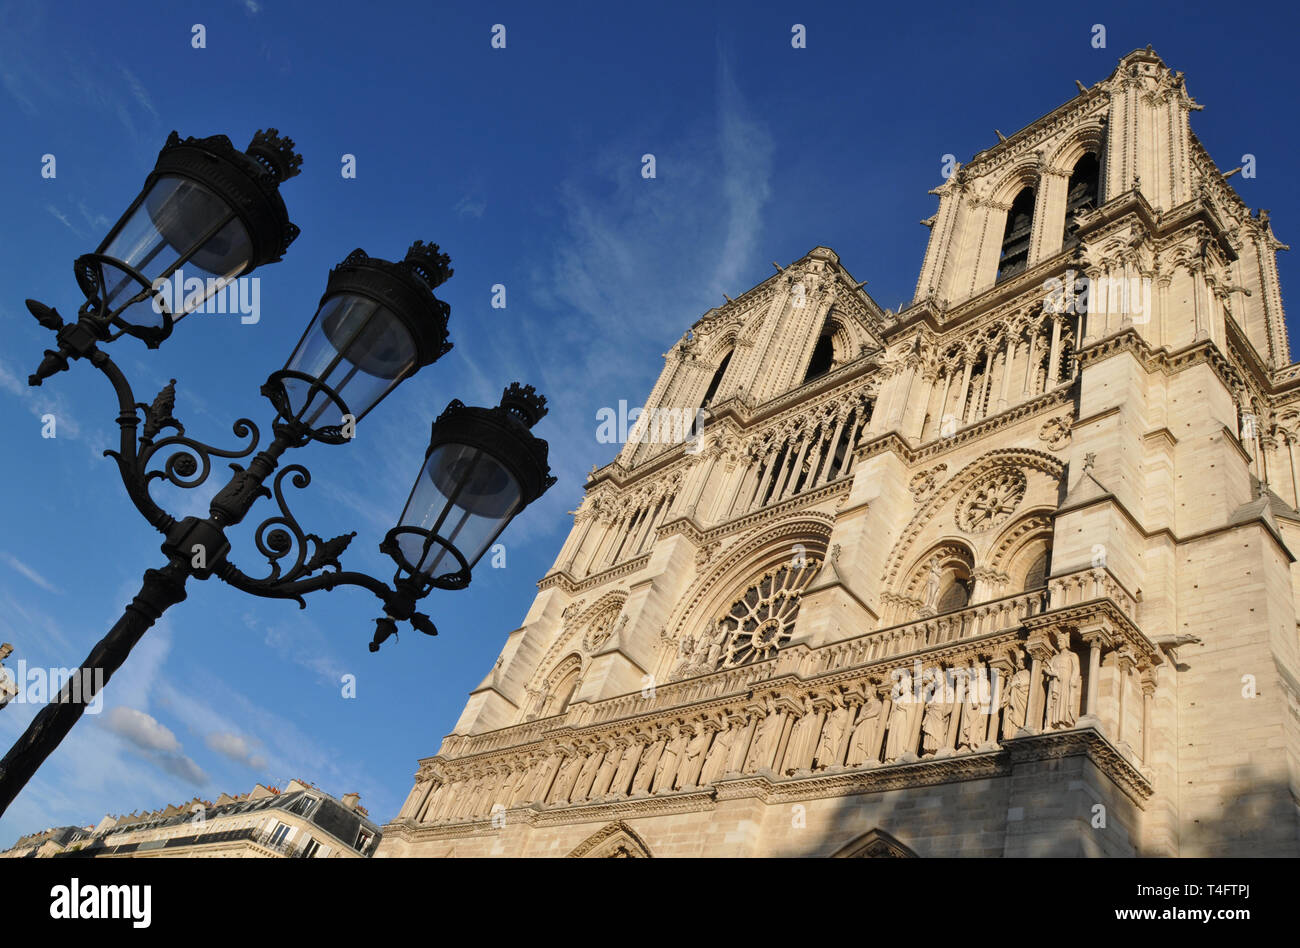 Vue extérieure de septembre 2018 de la cathédrale Notre-Dame de Paris. La construction sur le monument gothique français, un symbole de la ville, a commencé en 1163. Banque D'Images